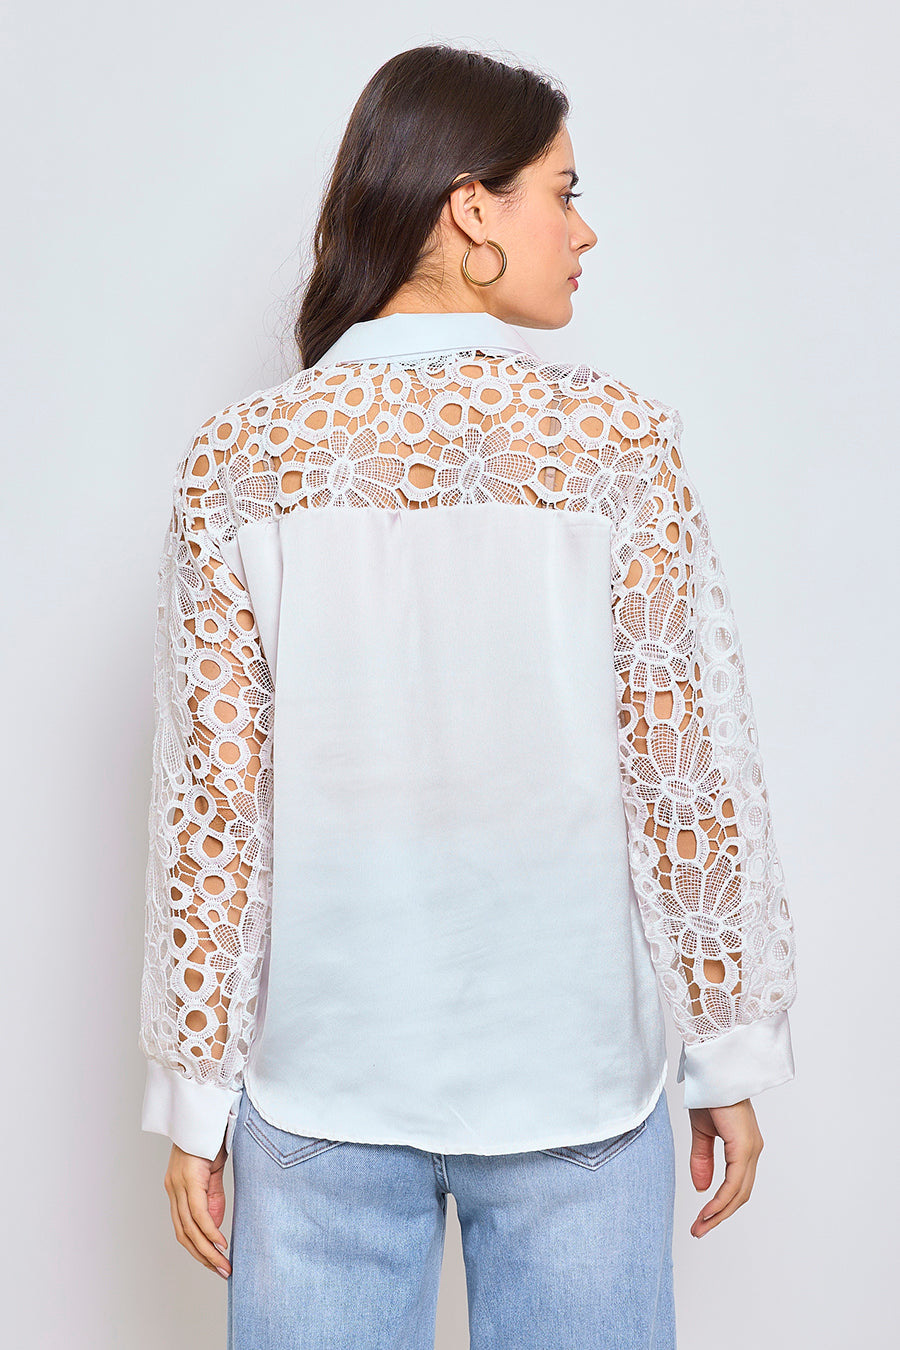 Γυναικείο πουκάμισο Gloriana, Λευκό 4